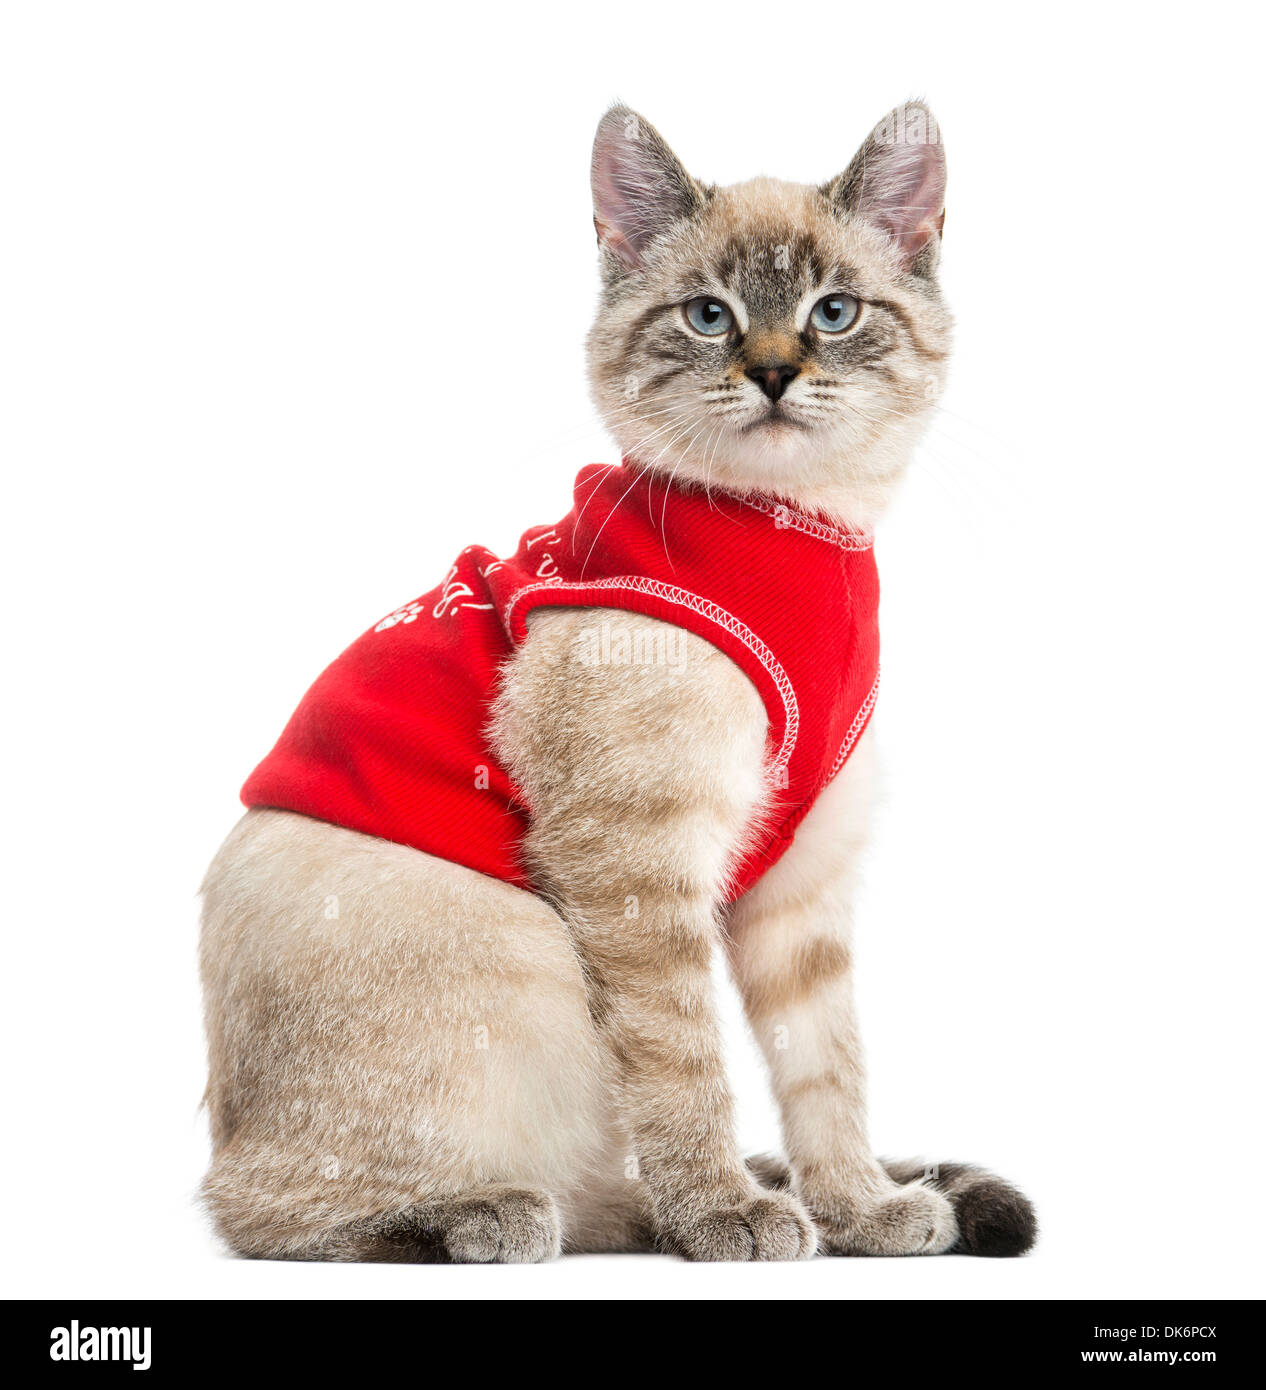 Vista laterale di un gatto siamese gatto con parte superiore rossa, guardando la telecamera, 5 mesi di età, contro uno sfondo bianco Foto Stock